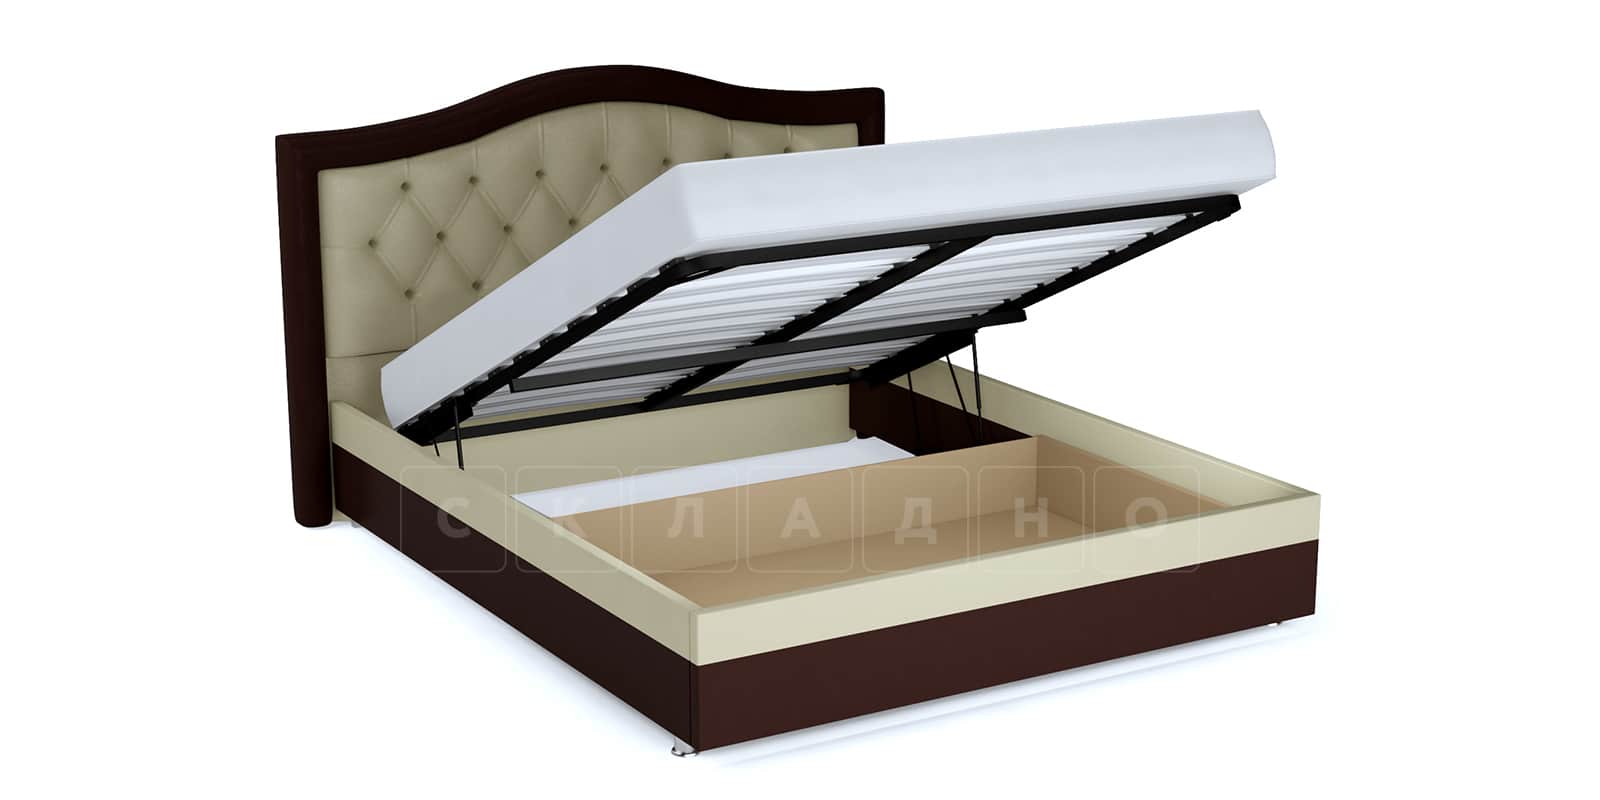 Мягкая кровать Малибу 160см экокожа бежевый-шоколад вариант 9 фото 2 | интернет-магазин Складно